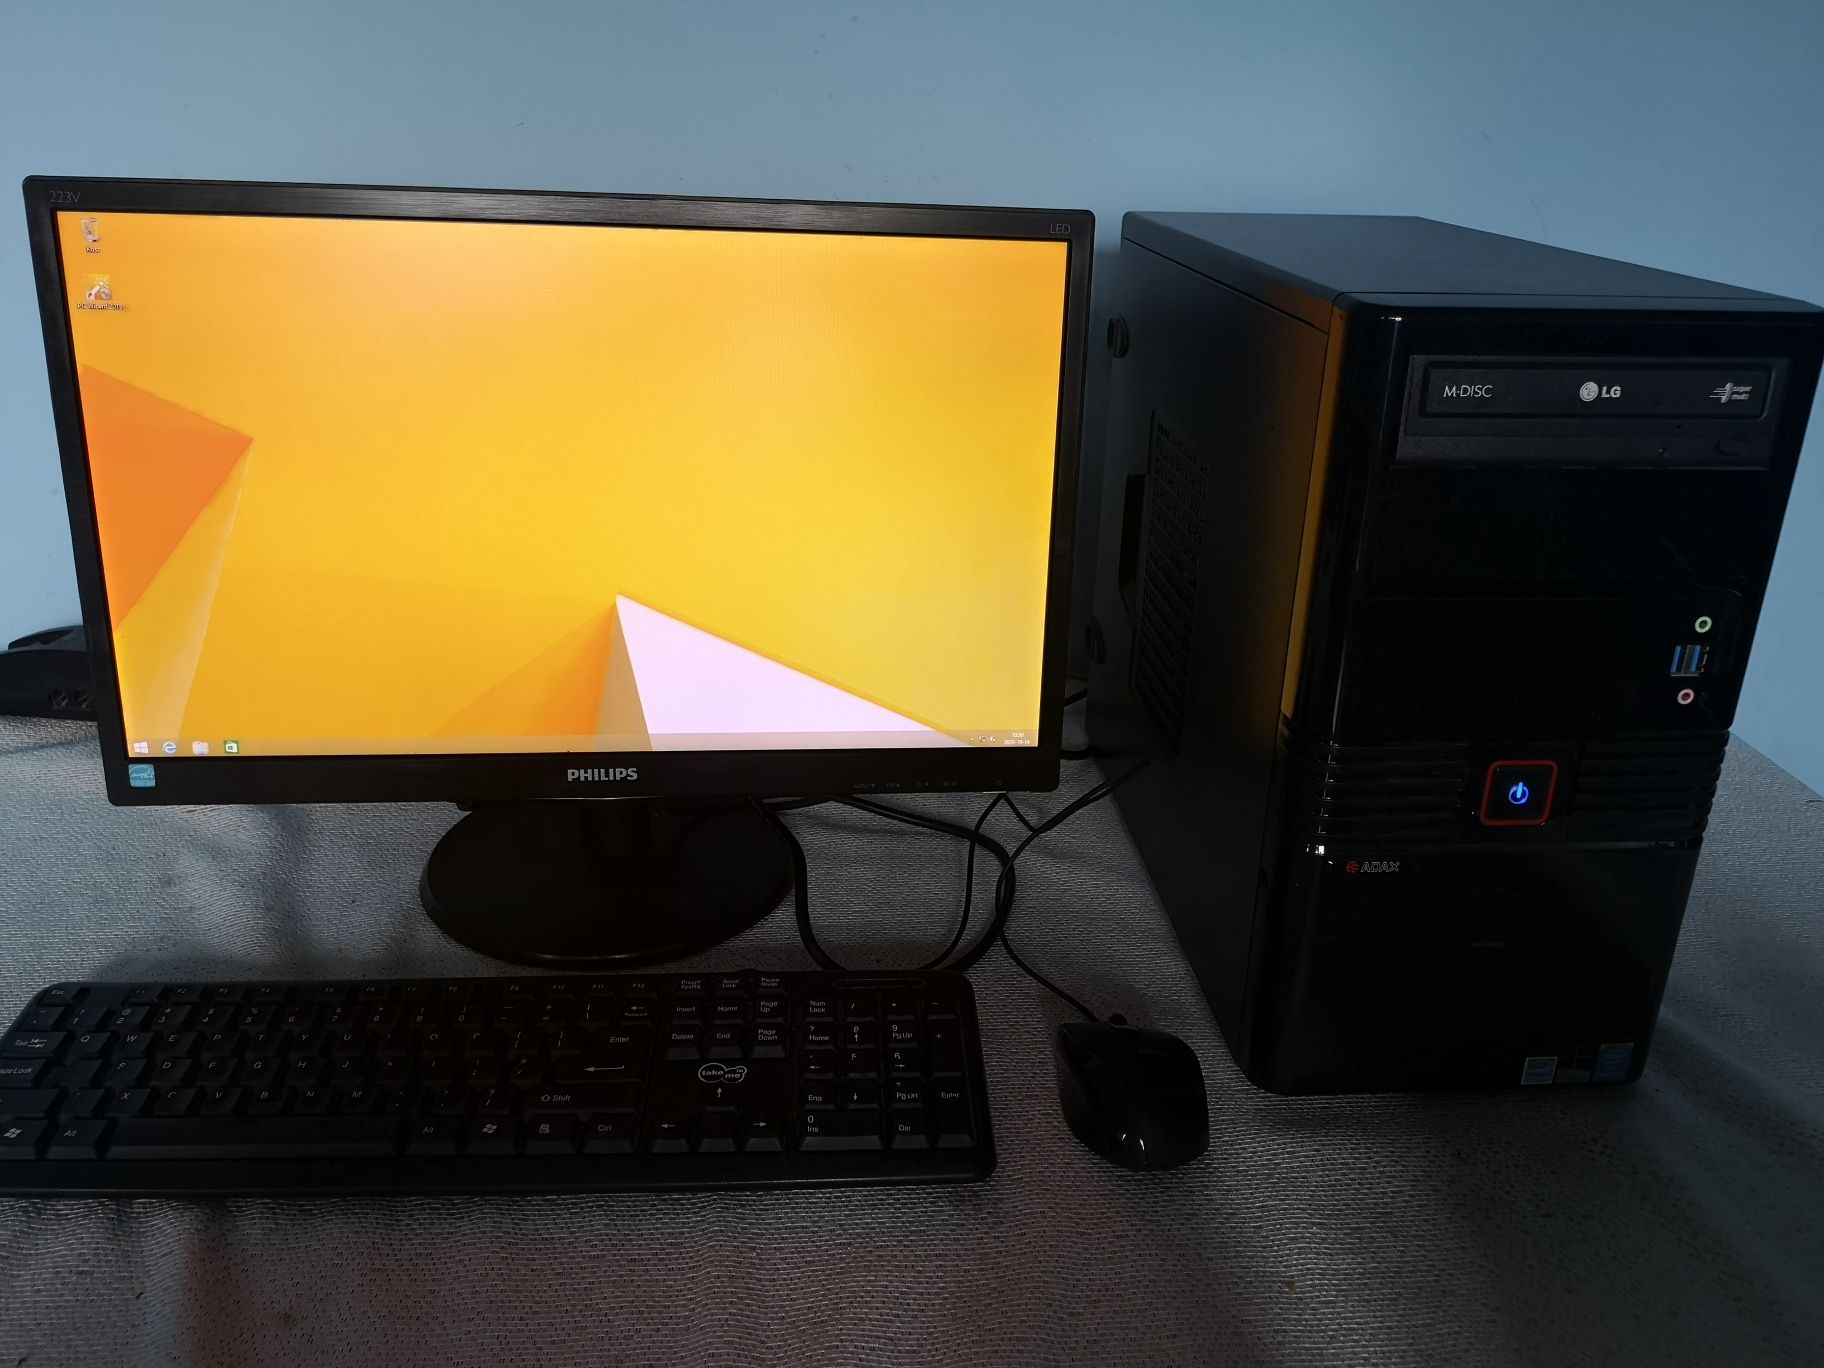 Komputer stacjonarny z monitorem